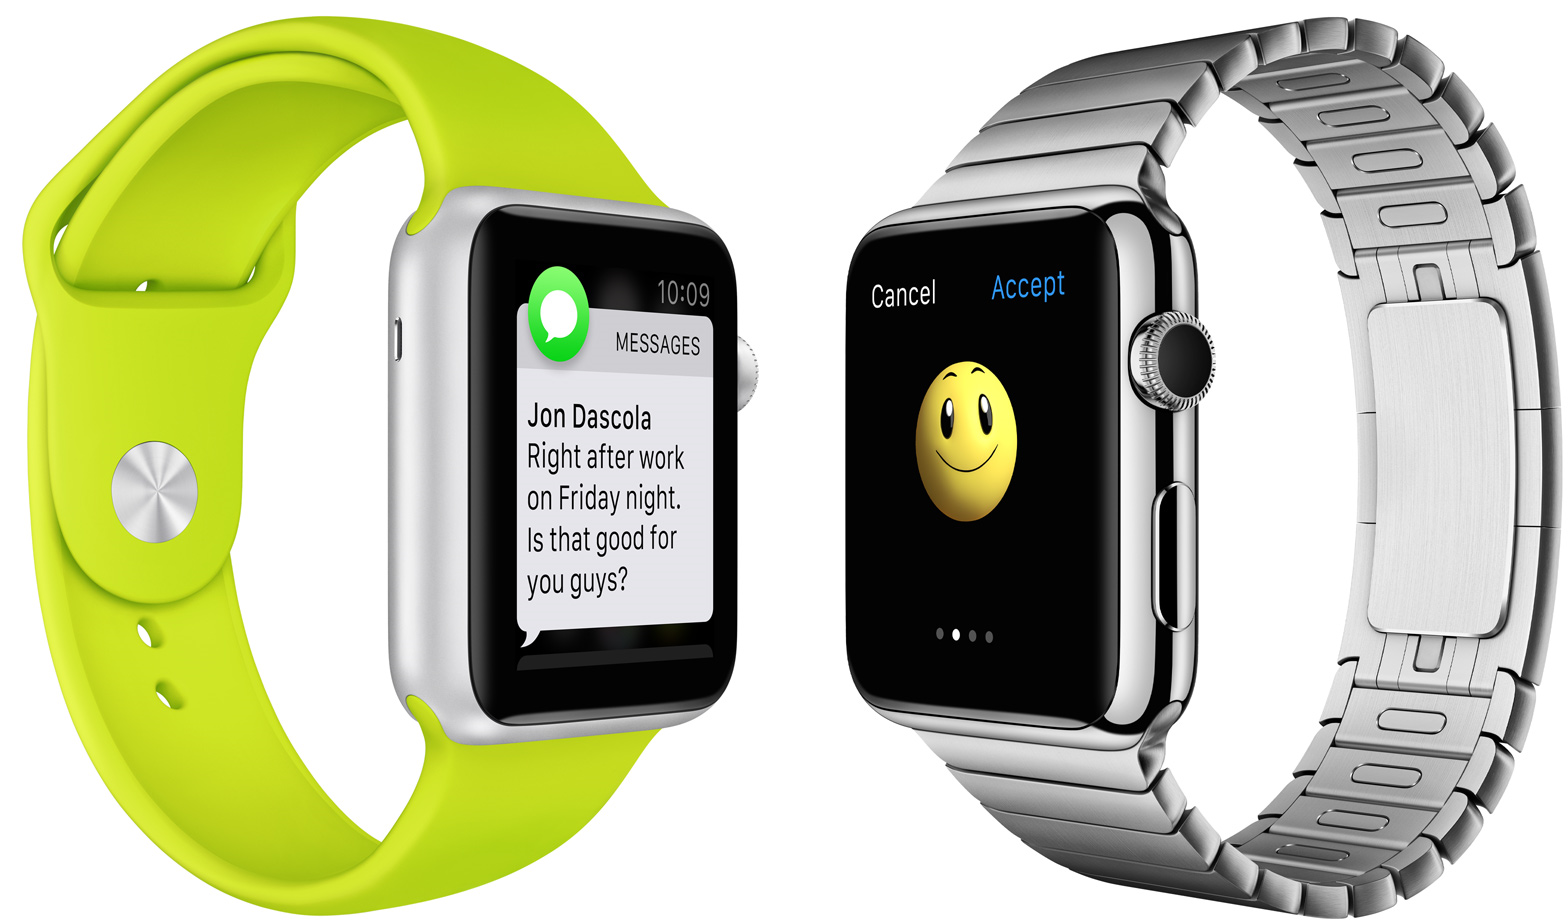 Apple Watch アプリ開発キット WatchKit が発表されました！久々に新しい開発言語に挑戦してみようと思う